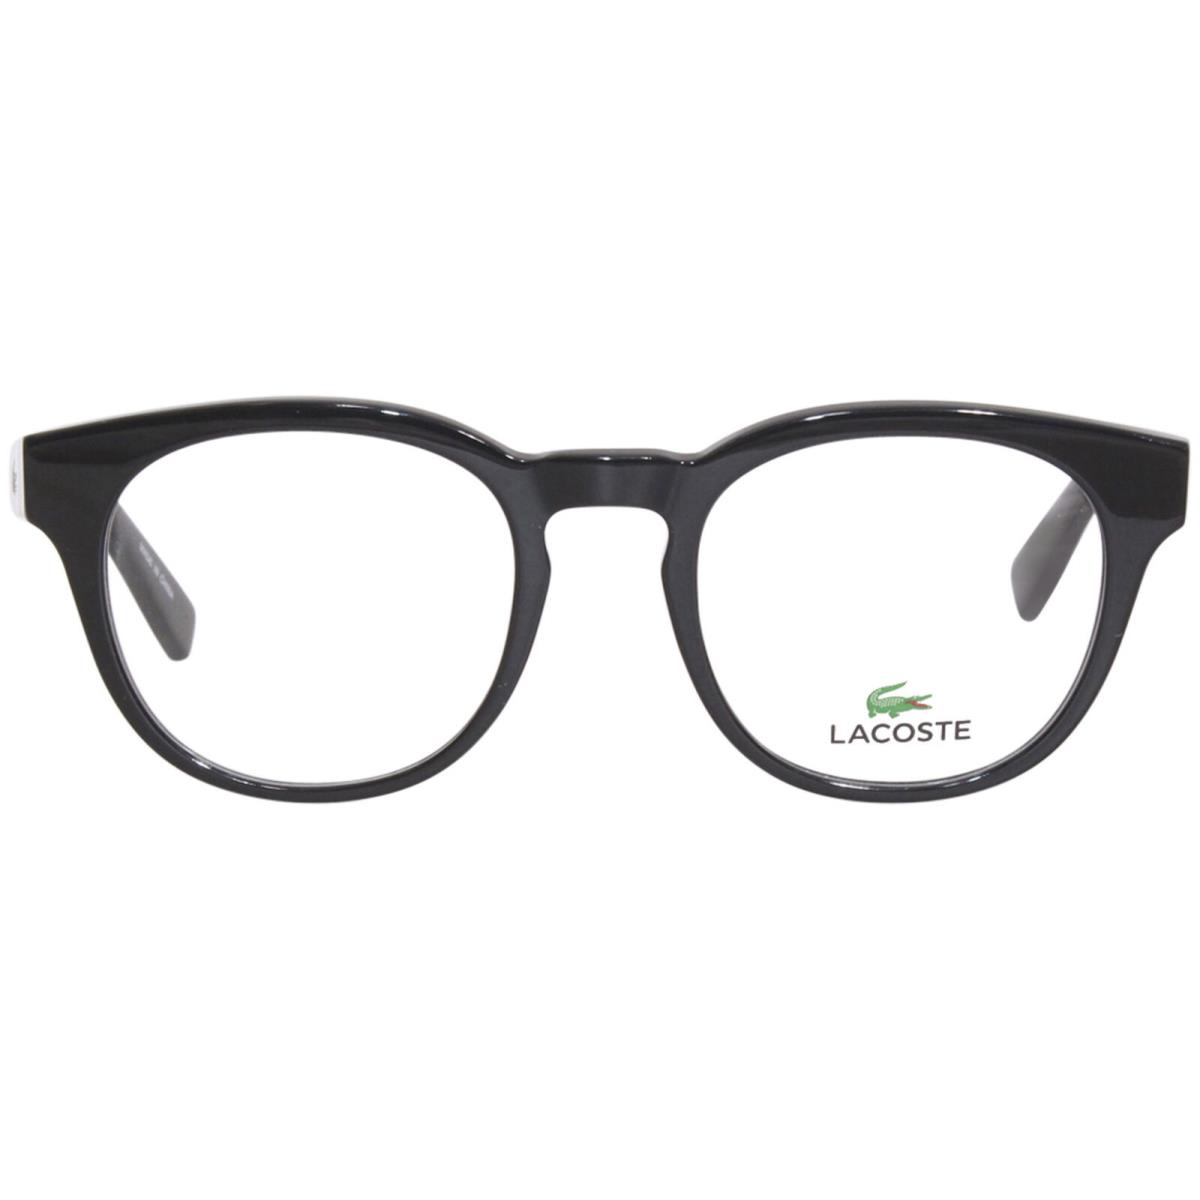 Lacoste L2904 001 Eyeglasses Frame Black Full Rim Oval Shape 49mm